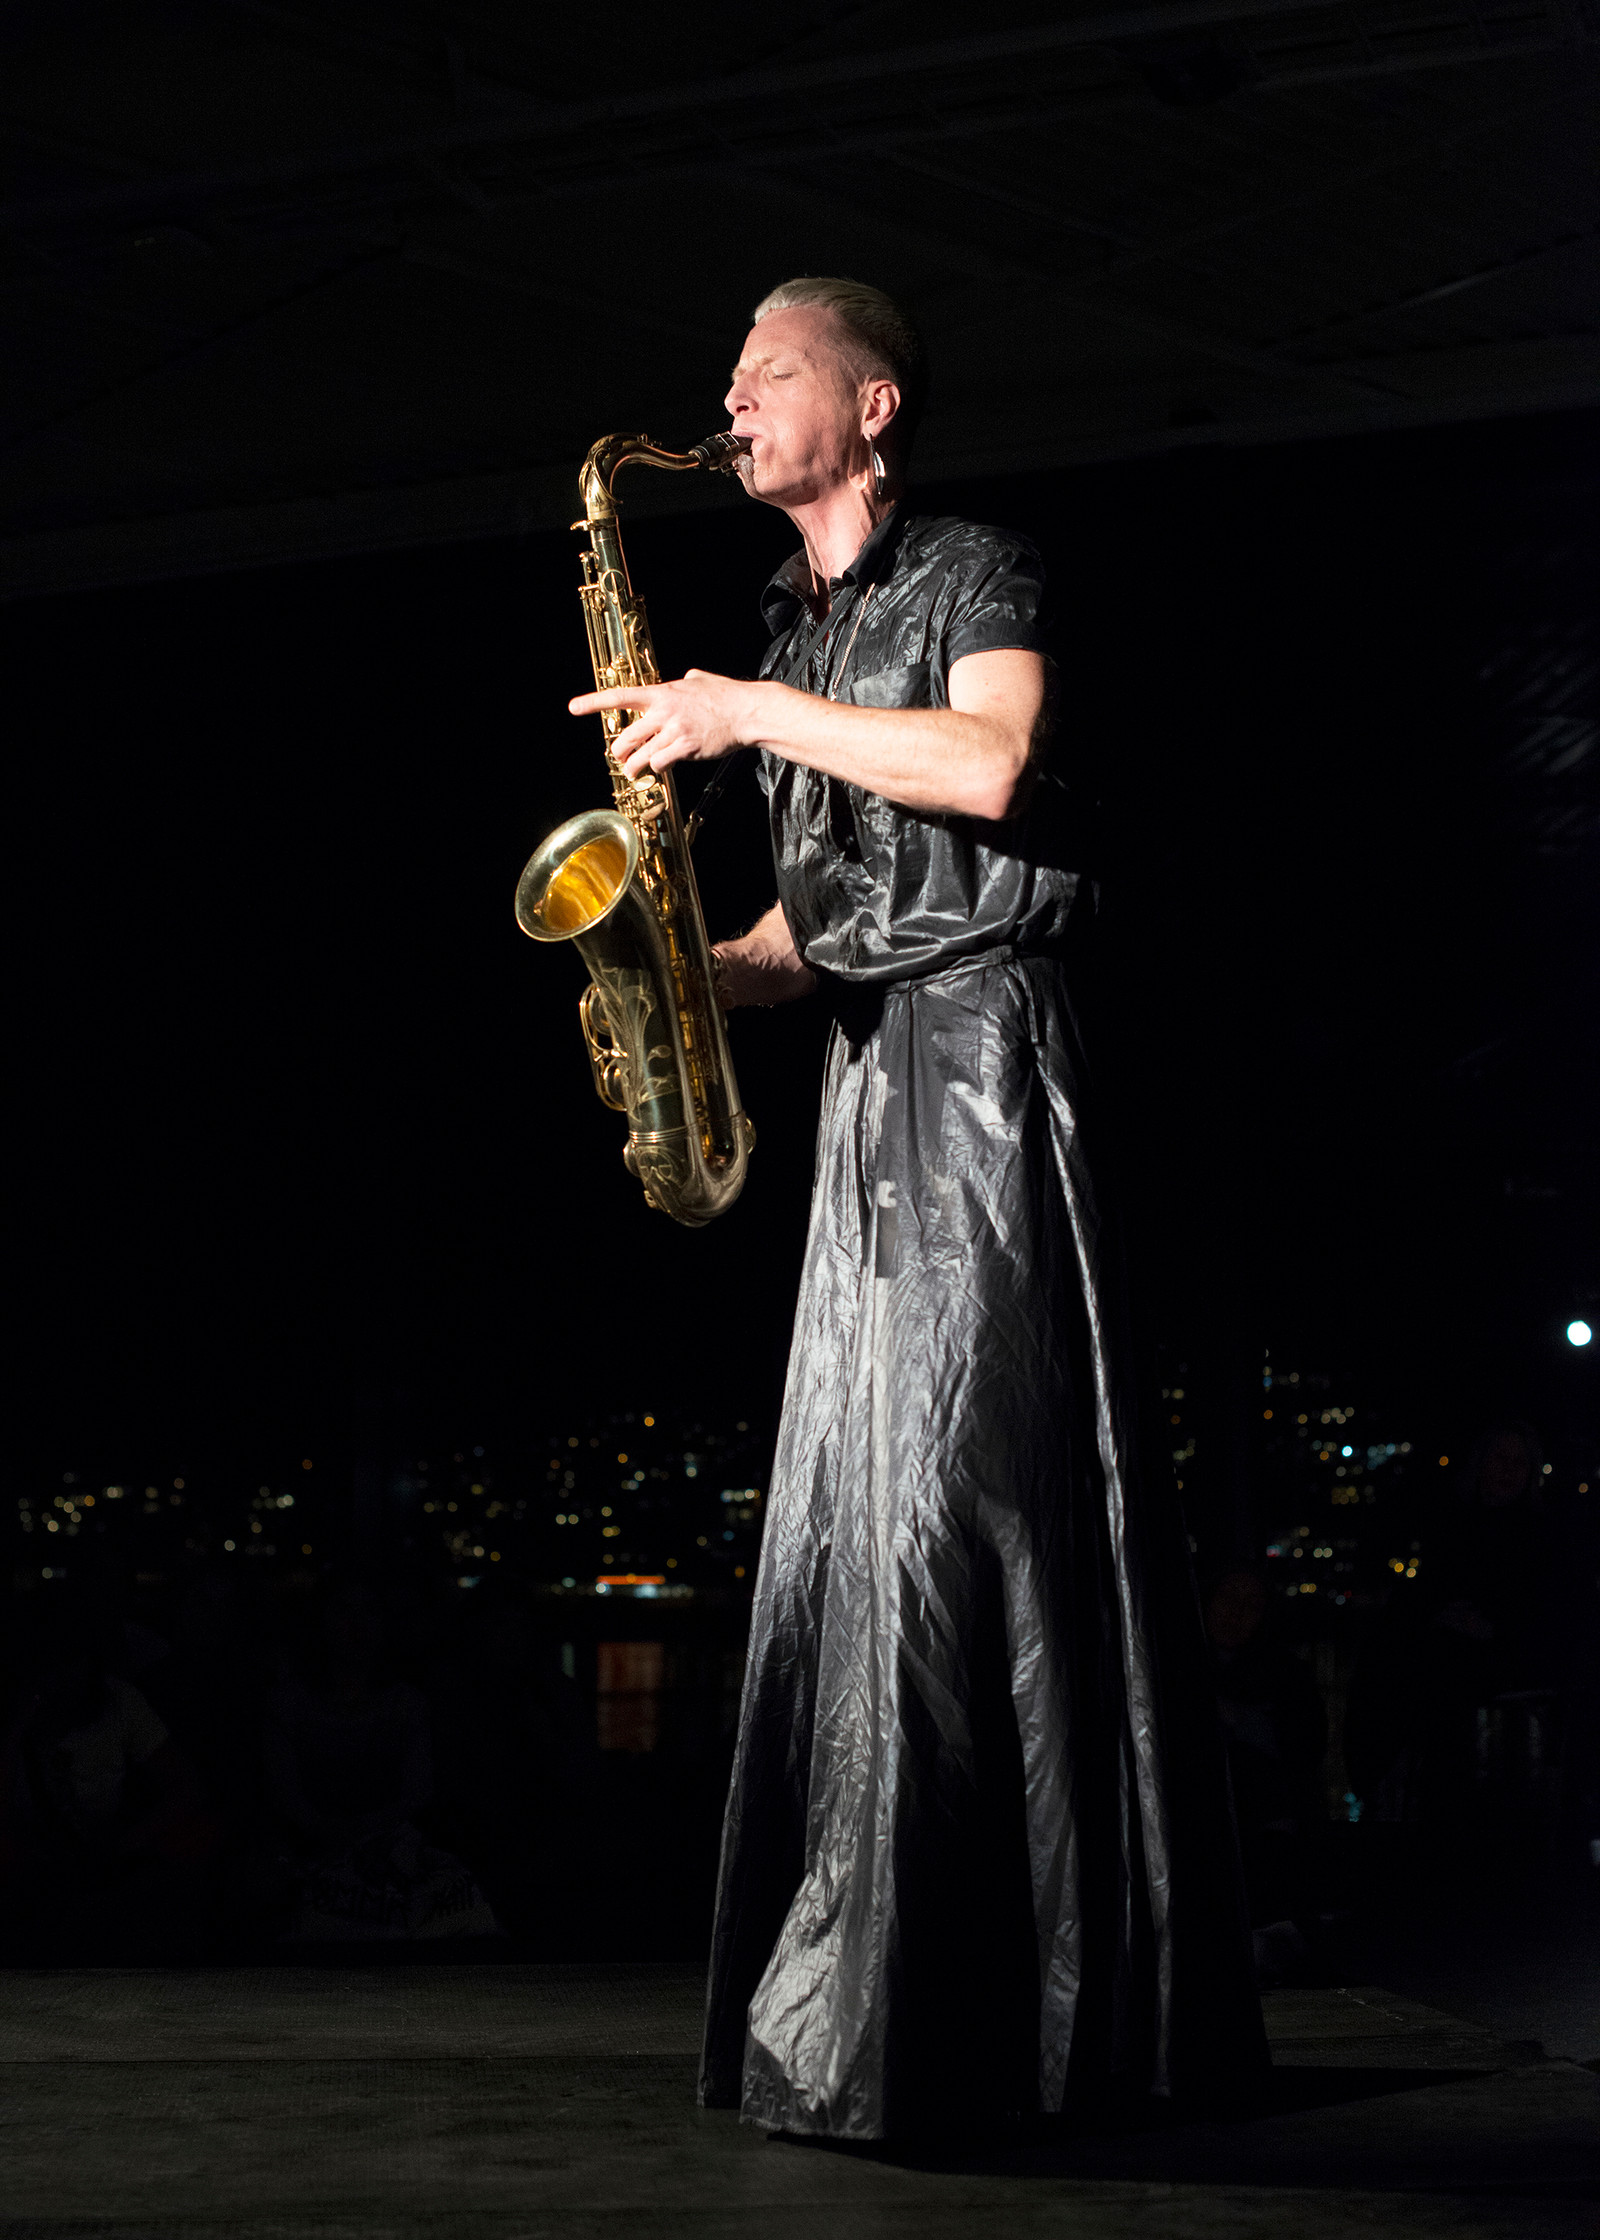 Bendik Giske performing at Prostneset harbor terminal, Coast 2022. Photo: Mihaly Stefanovicz